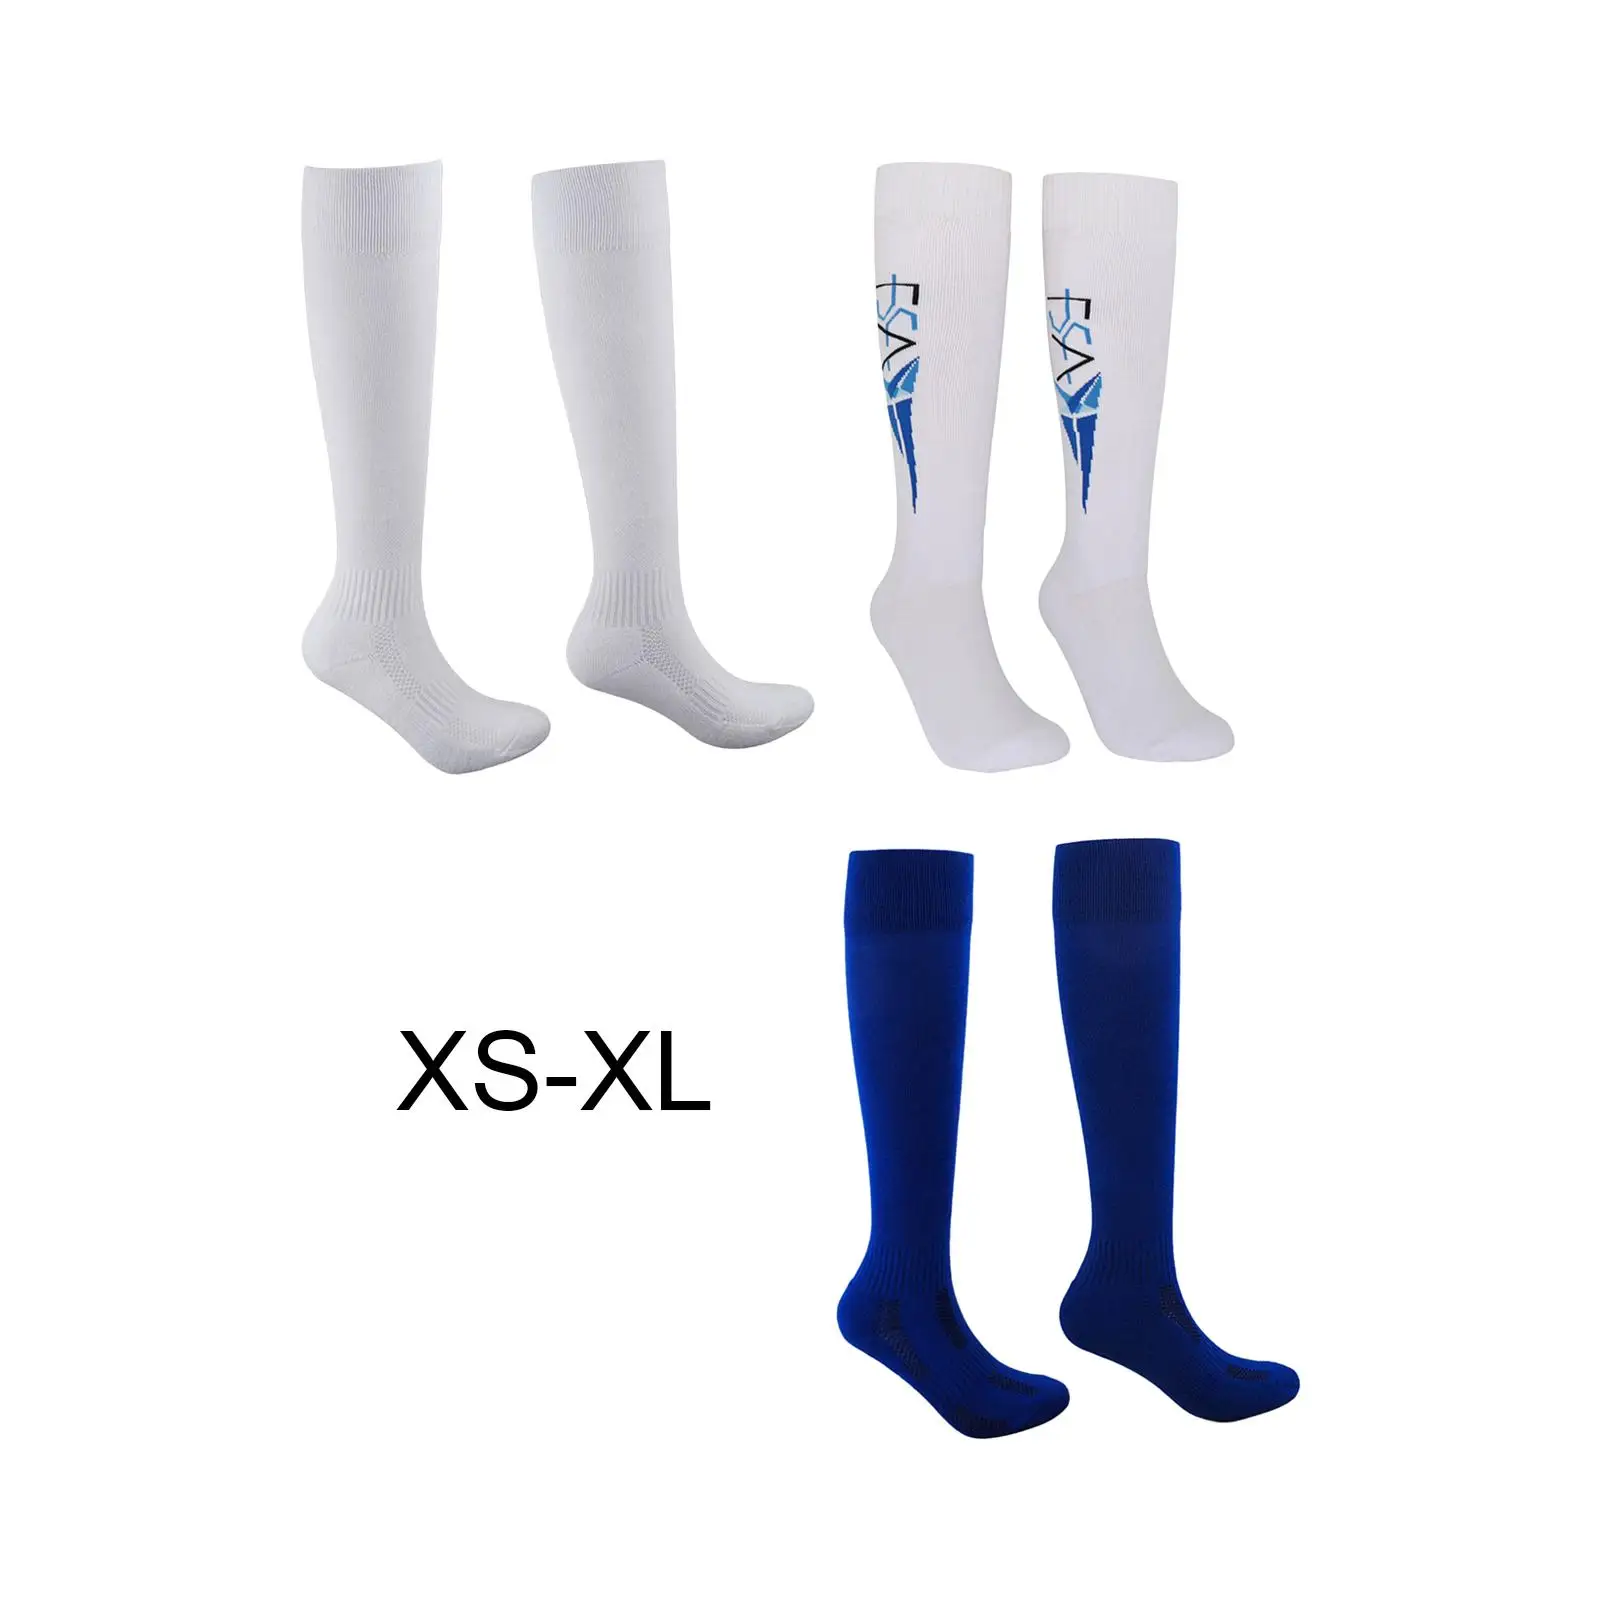 Fencing Socks for Men Fencing Socks for Non Slip over Knee fiber Unisex Protective Fencing Stockings for Women Softball soccer